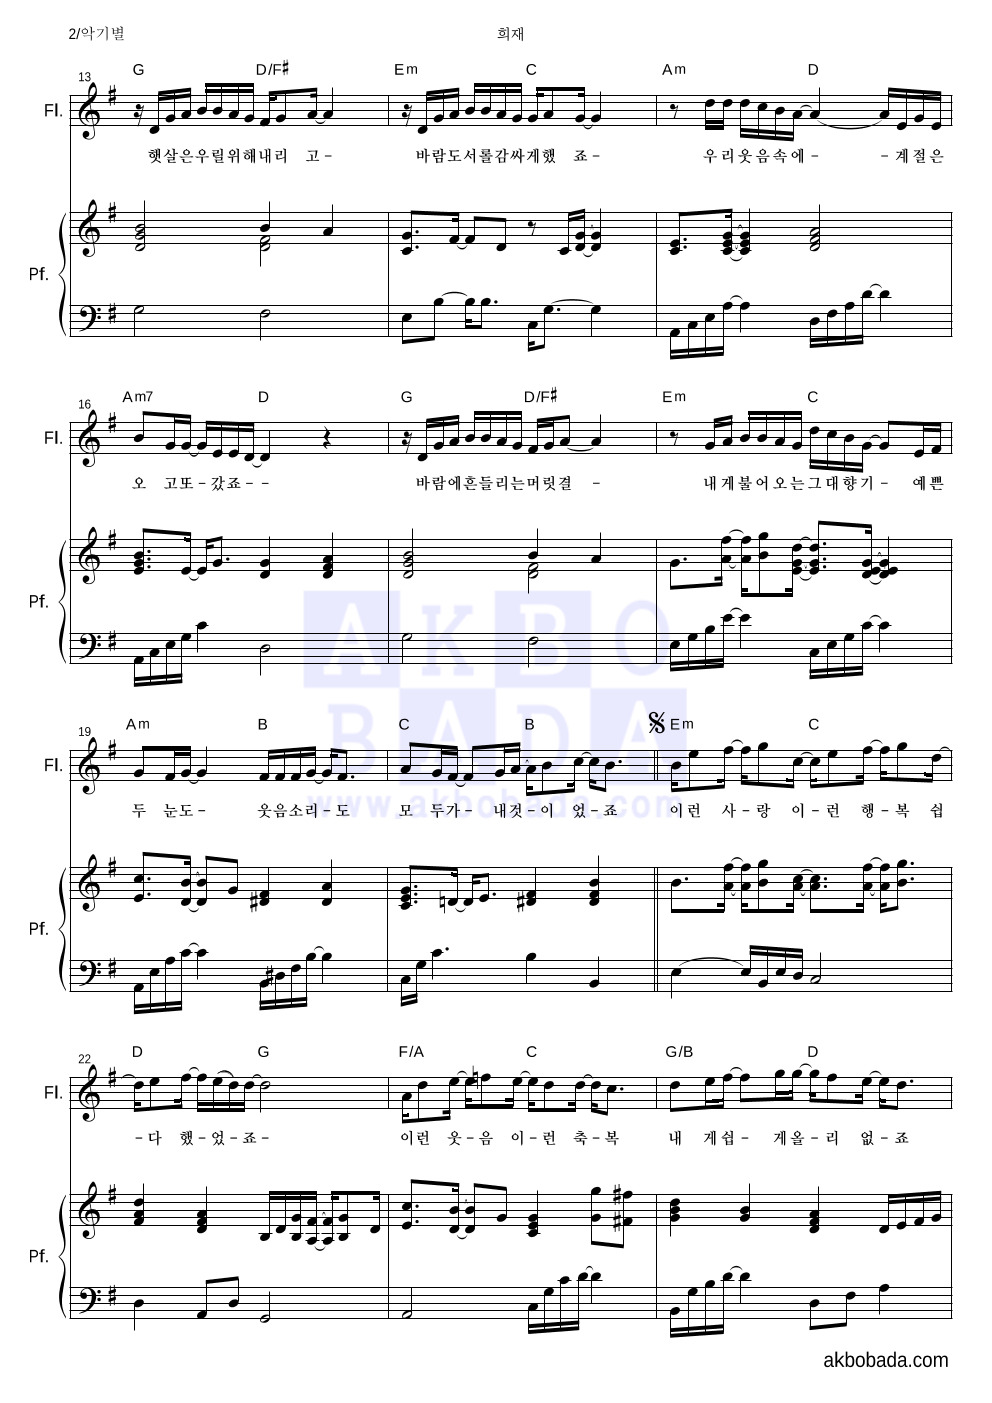 성시경 - 희재 플룻&피아노 악보 